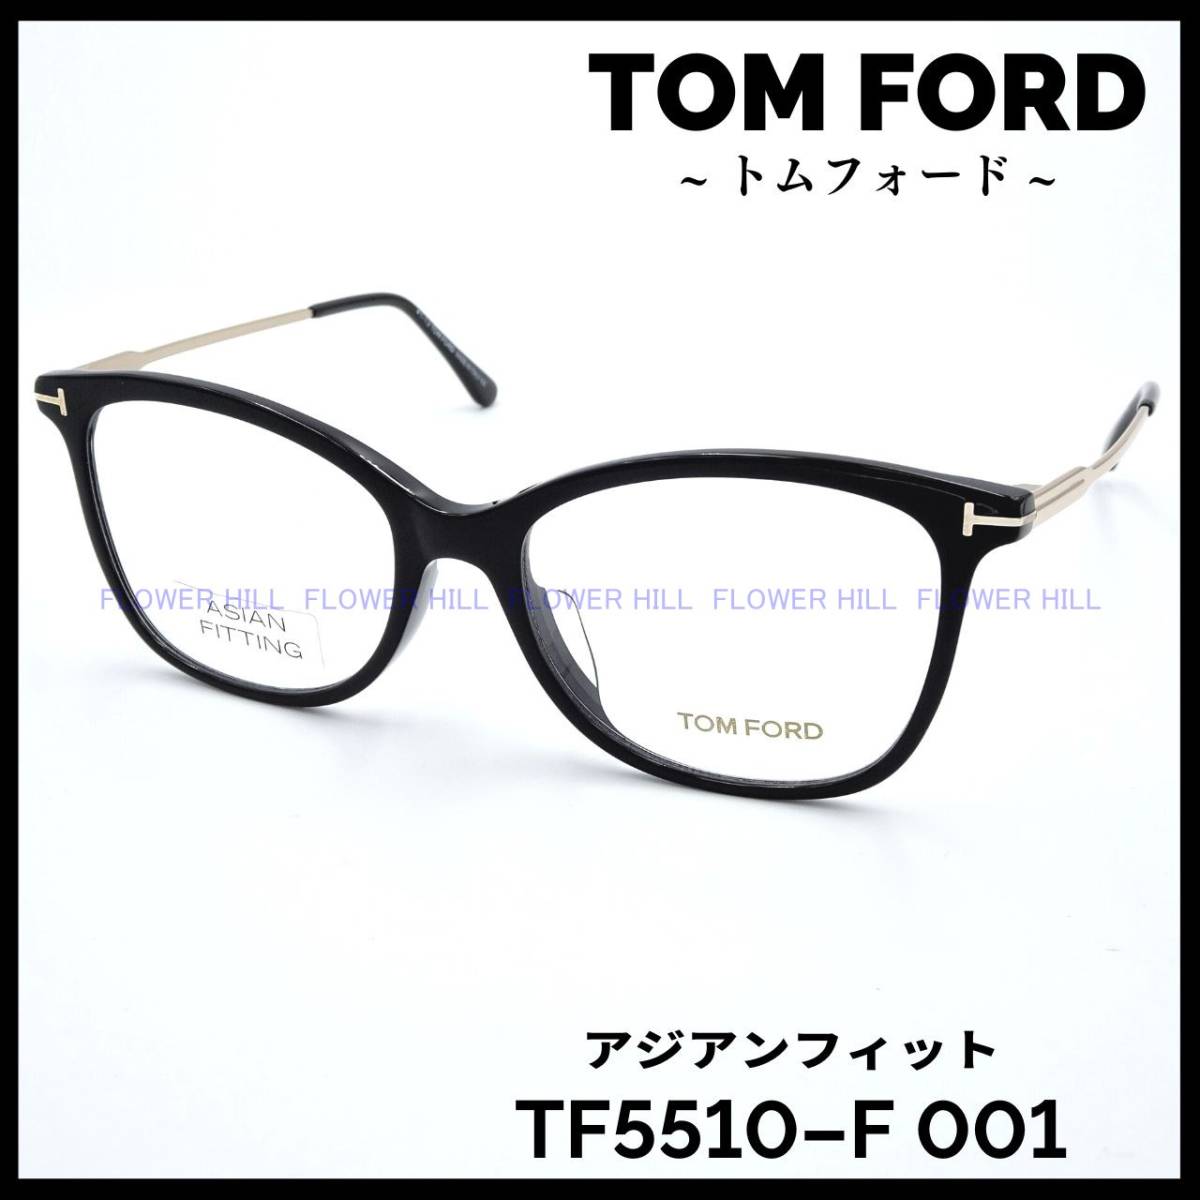 【新品・送料無料】トムフォード TOM FORD TF5510-F 001 メガネ フレーム ブラック アジアンフィット 眼鏡 高級